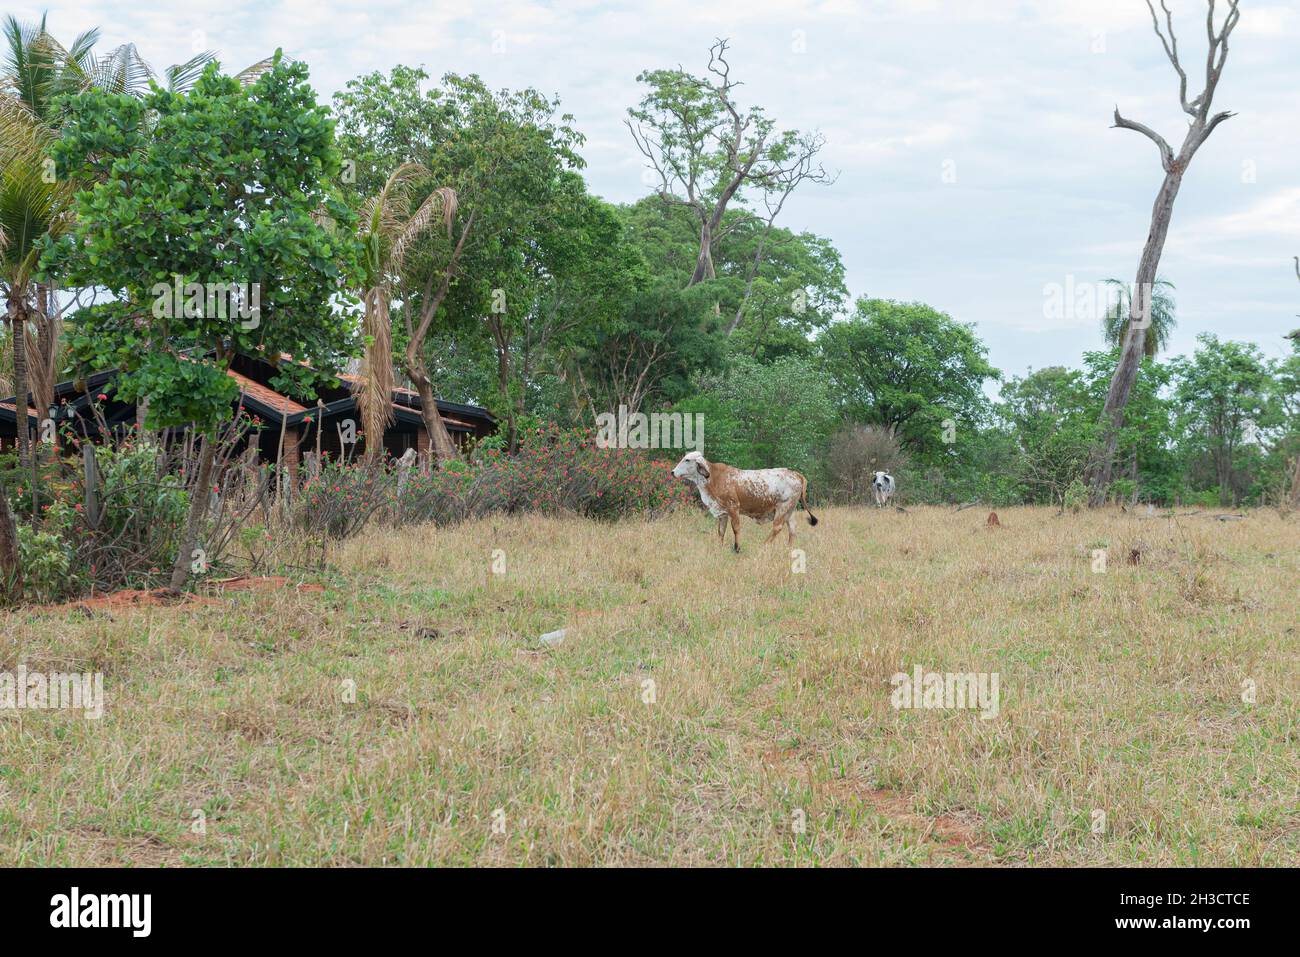 Vache GIR dans un pâturage de brachiaria avec des arbres morts et secs à proximité dans la campagne du Brésil.Élevage de têtes de bétail pour la production de lait et m Banque D'Images